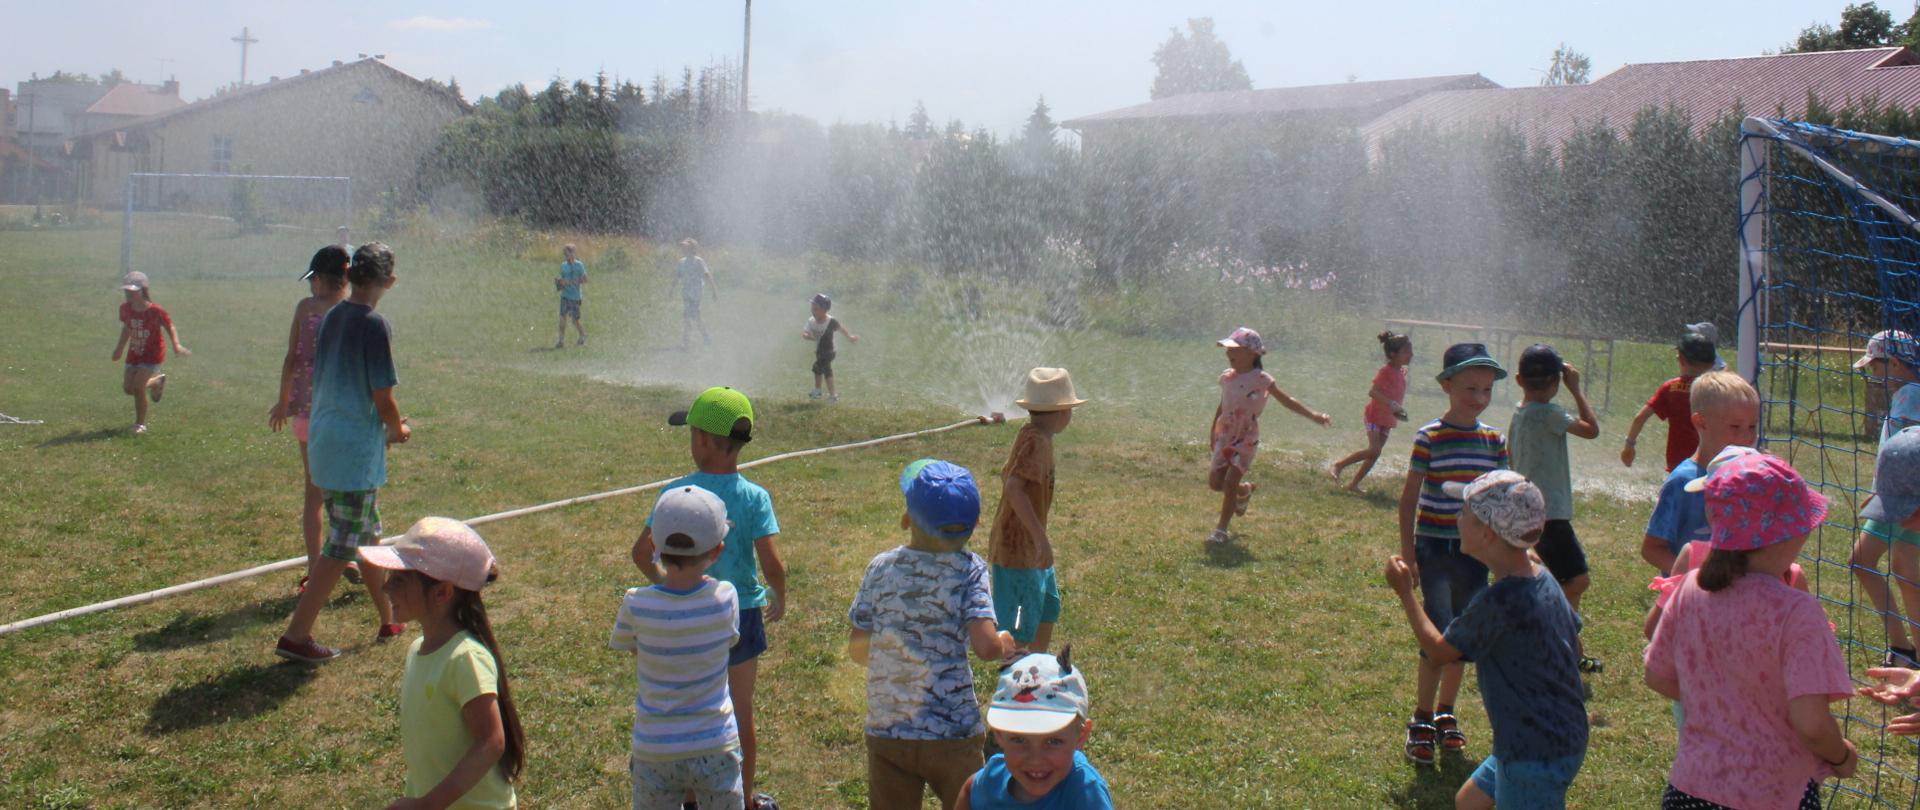 na zdjęciu widać dzieci w letnich strojach podczas zabawy przy kurtynie wodnej stworzonej przez strazaków